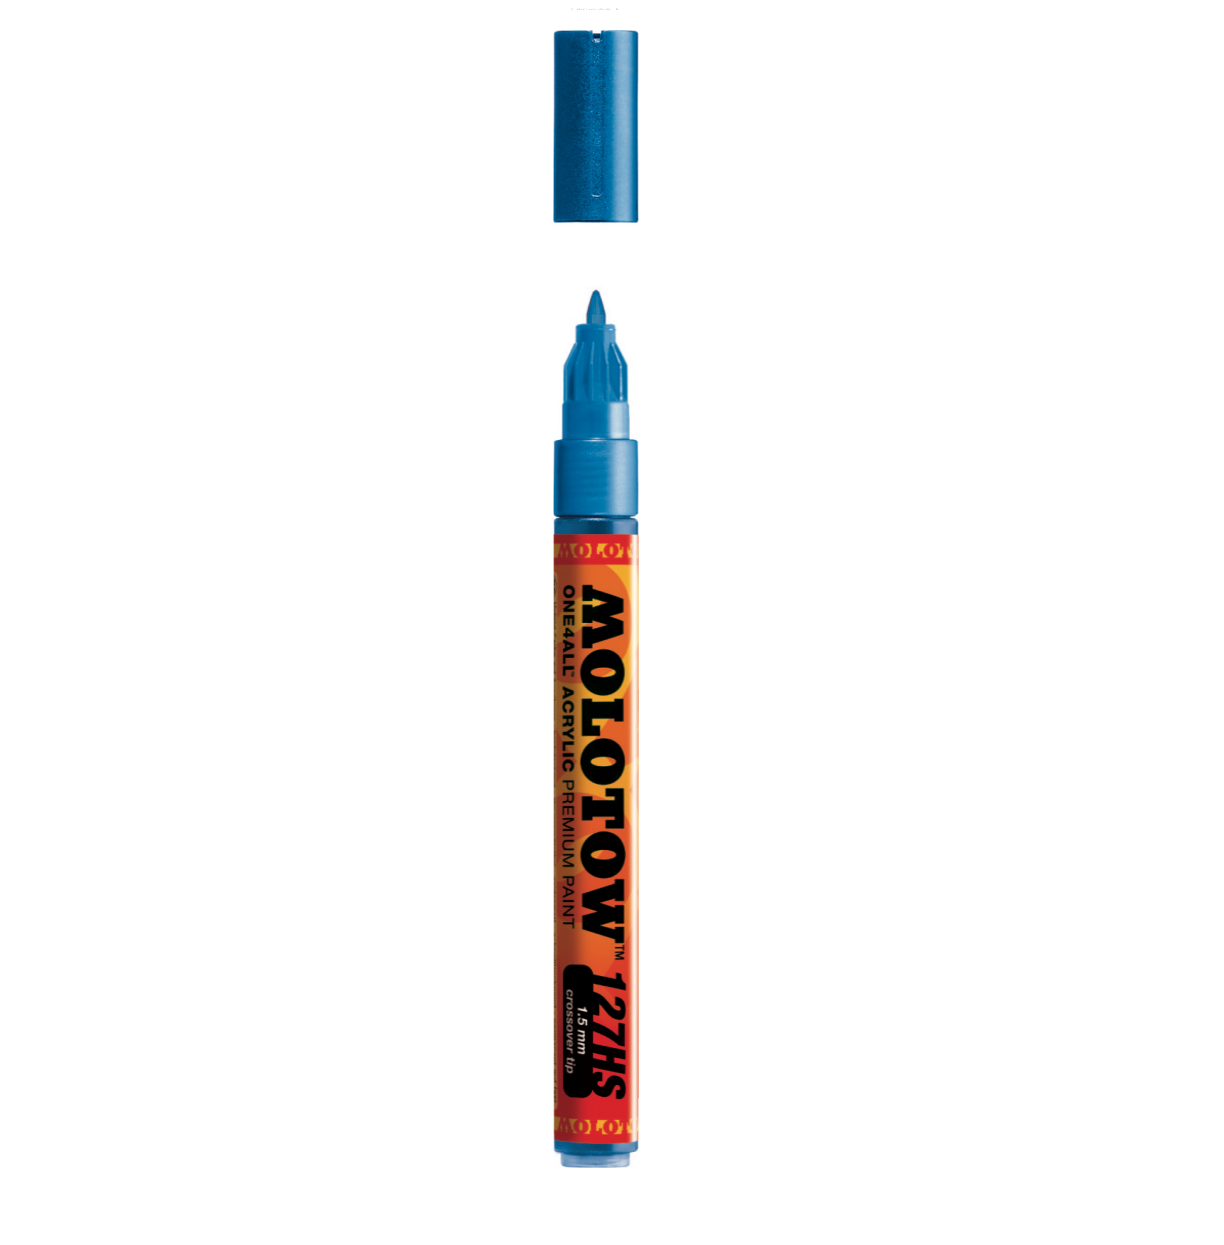 Molotow Co Tip 1.5Mm Metallic Blue Paint Mrkr